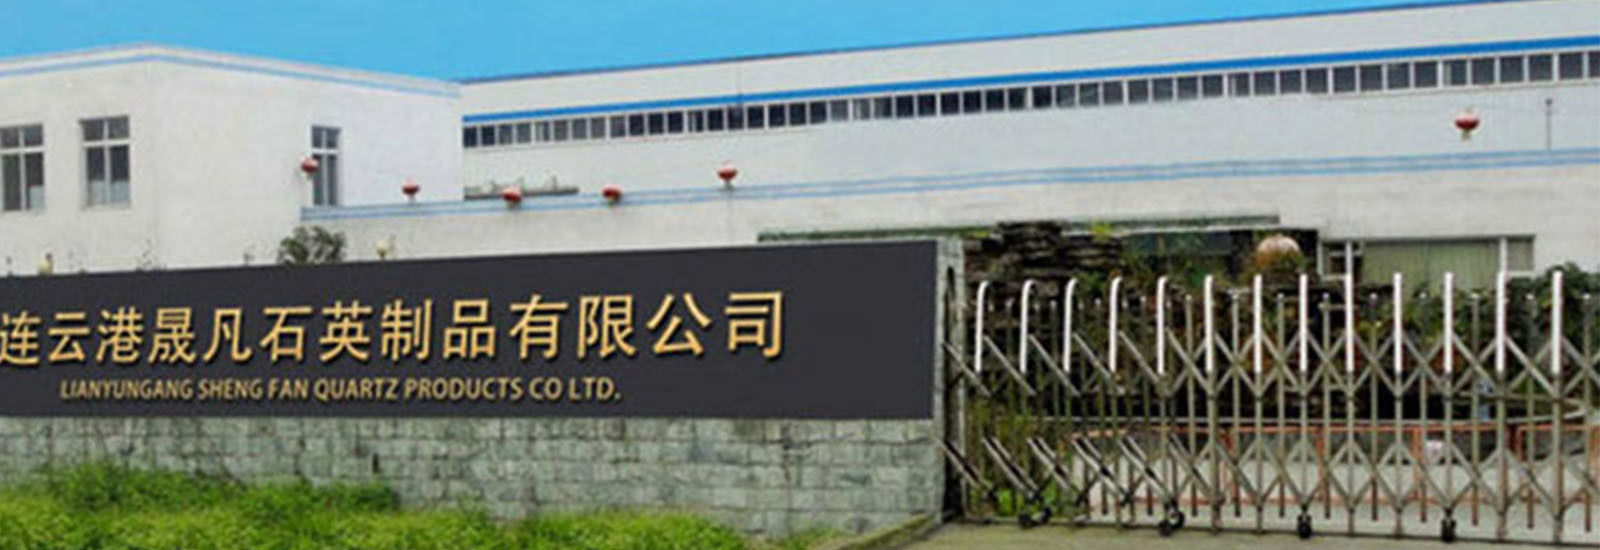 CHINA Lianyungang Shengfan Quartz Product Co., Ltd Bedrijfsprofiel